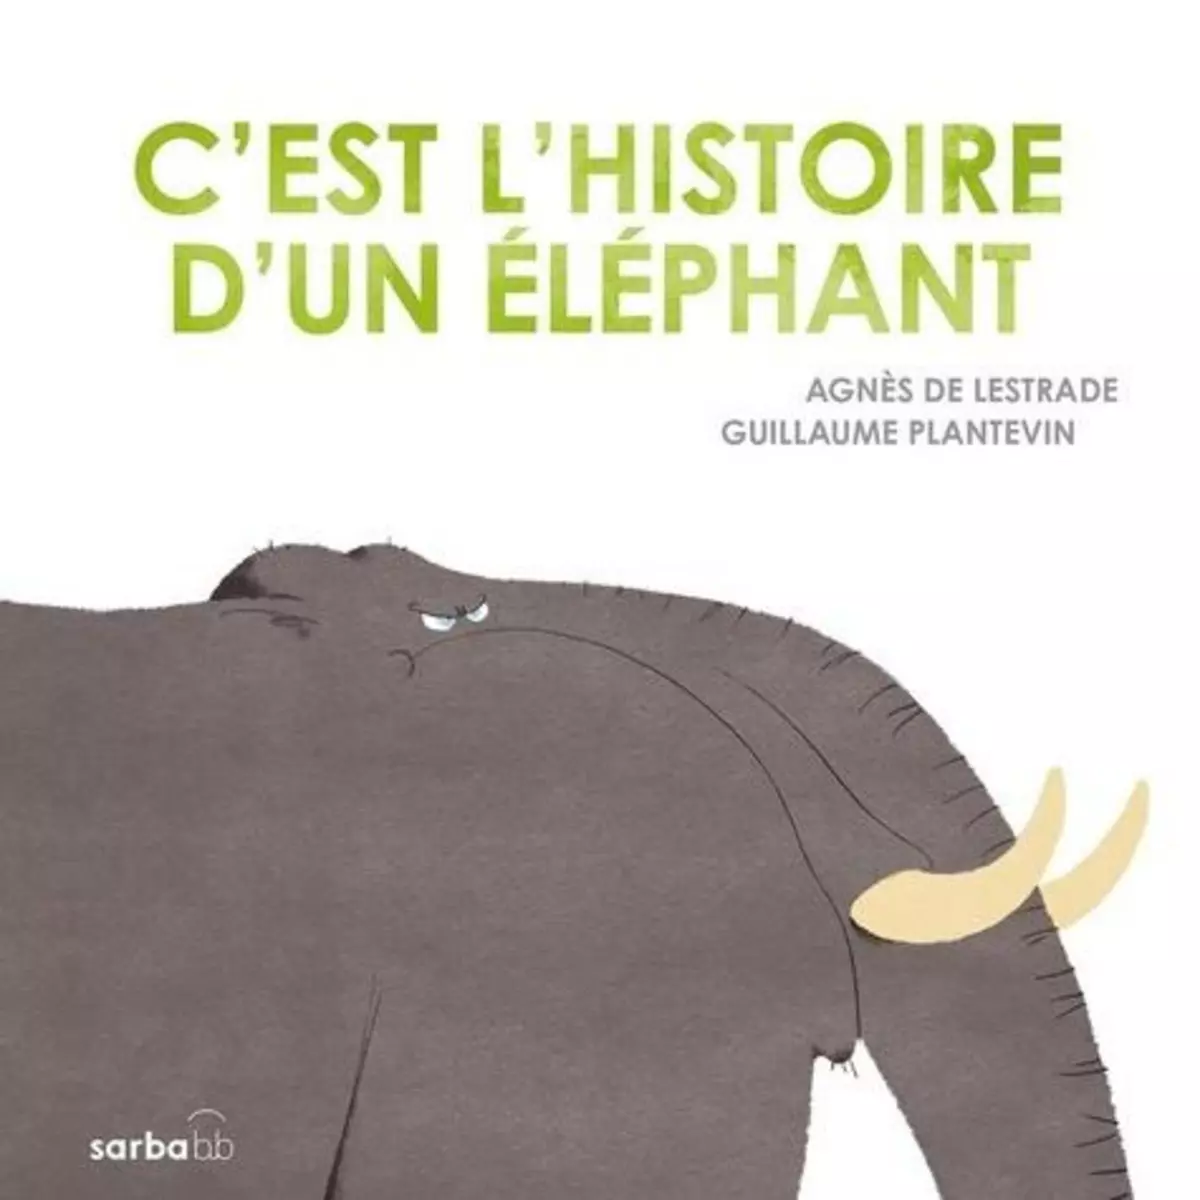  C'EST L'HISTOIRE D'UN ELEPHANT, Lestrade Agnès de